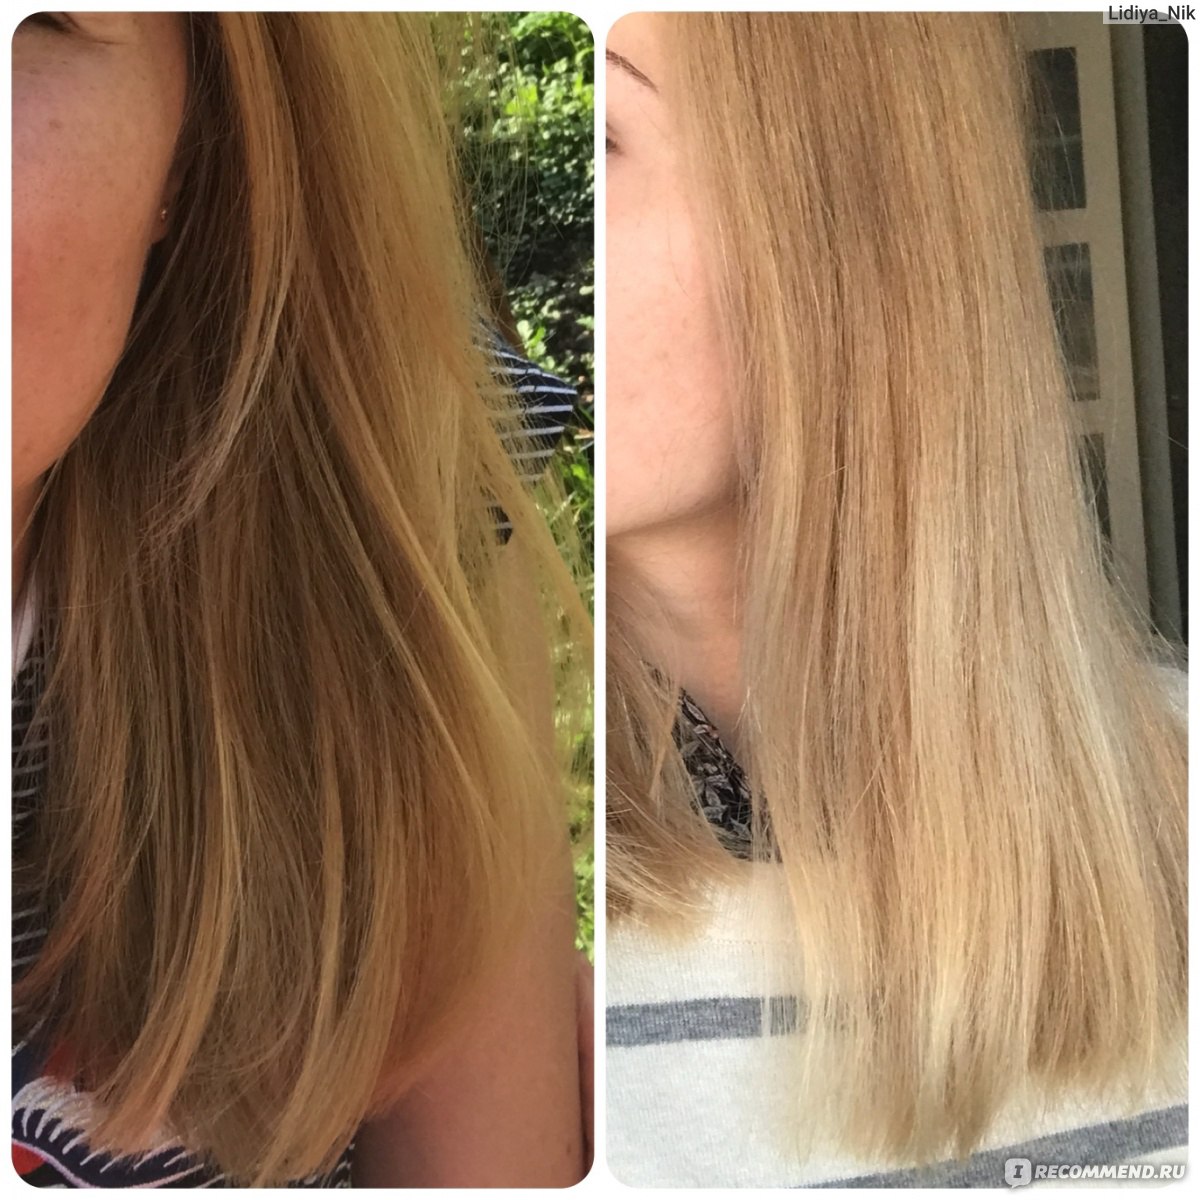 Песочный блонд цвет волос фото до и после окрашивания